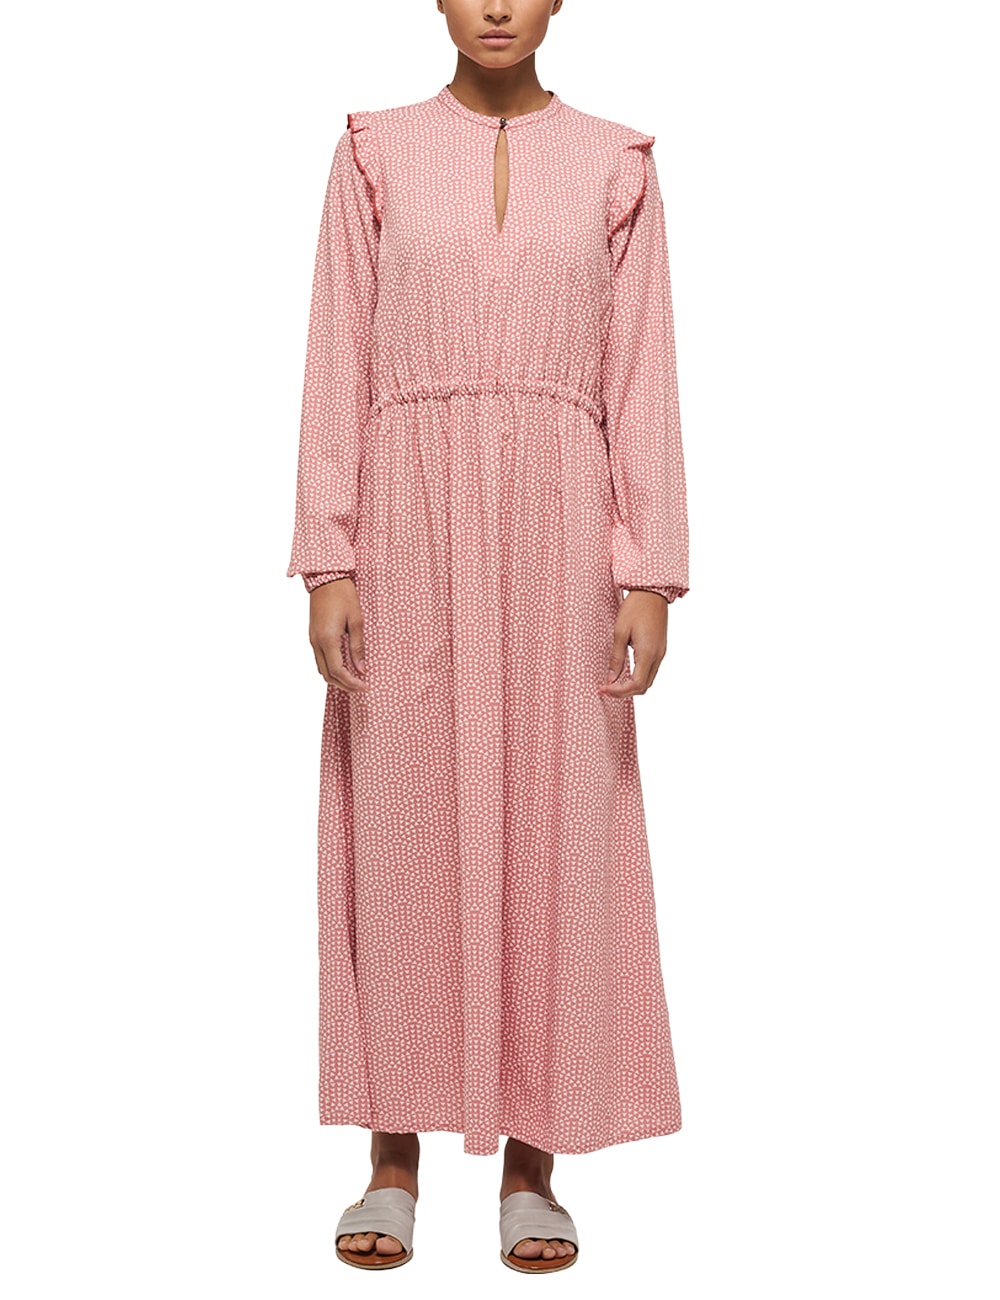 Maxikleid OTTO MUSTANG »Kleid« kaufen bei online